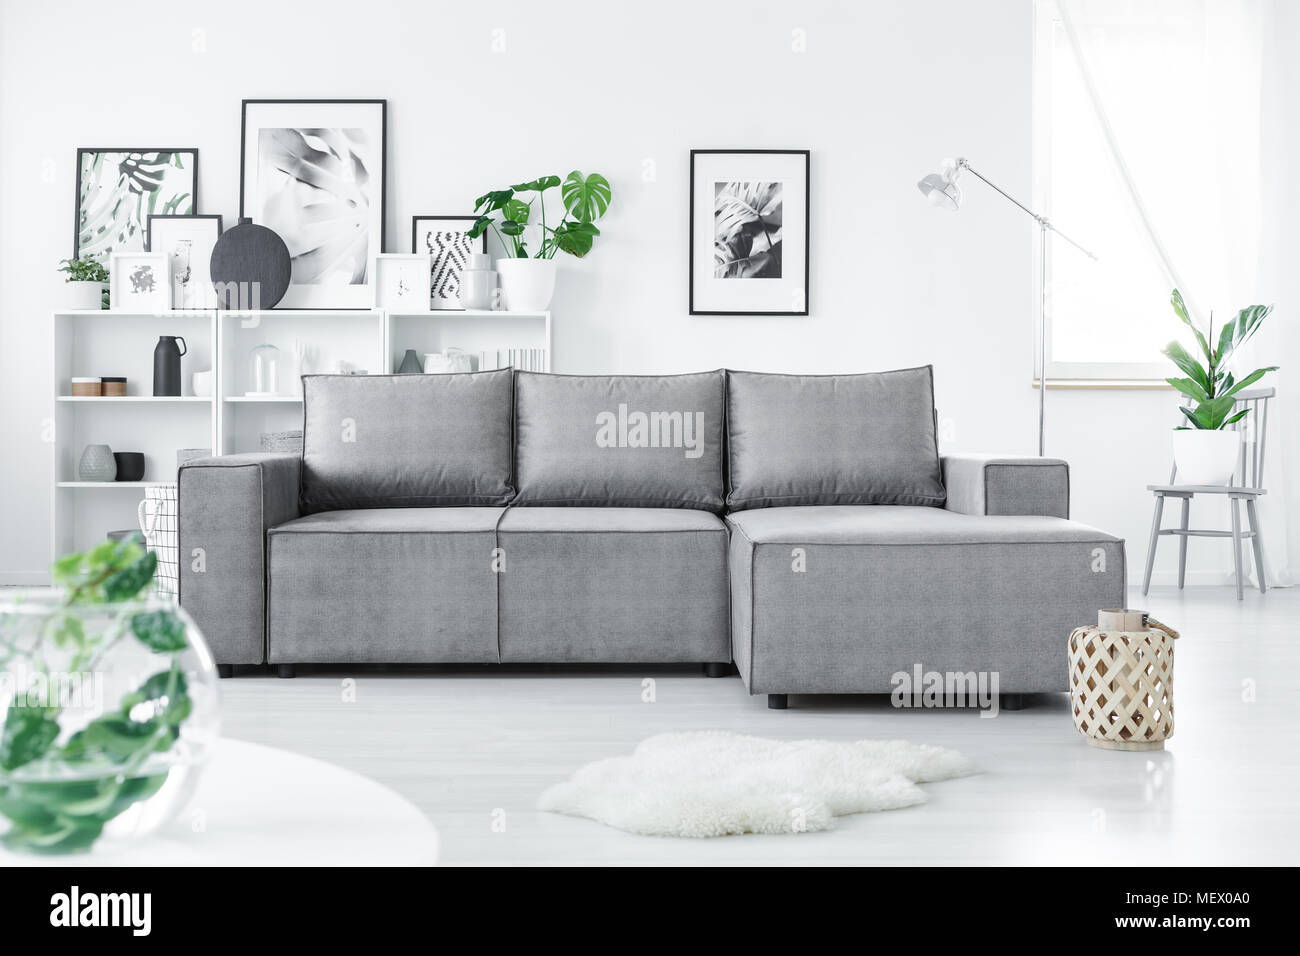 Canapé d'angle gris en blanc permanent salon intérieur avec des plantes vertes et de nombreuses affiches Banque D'Images